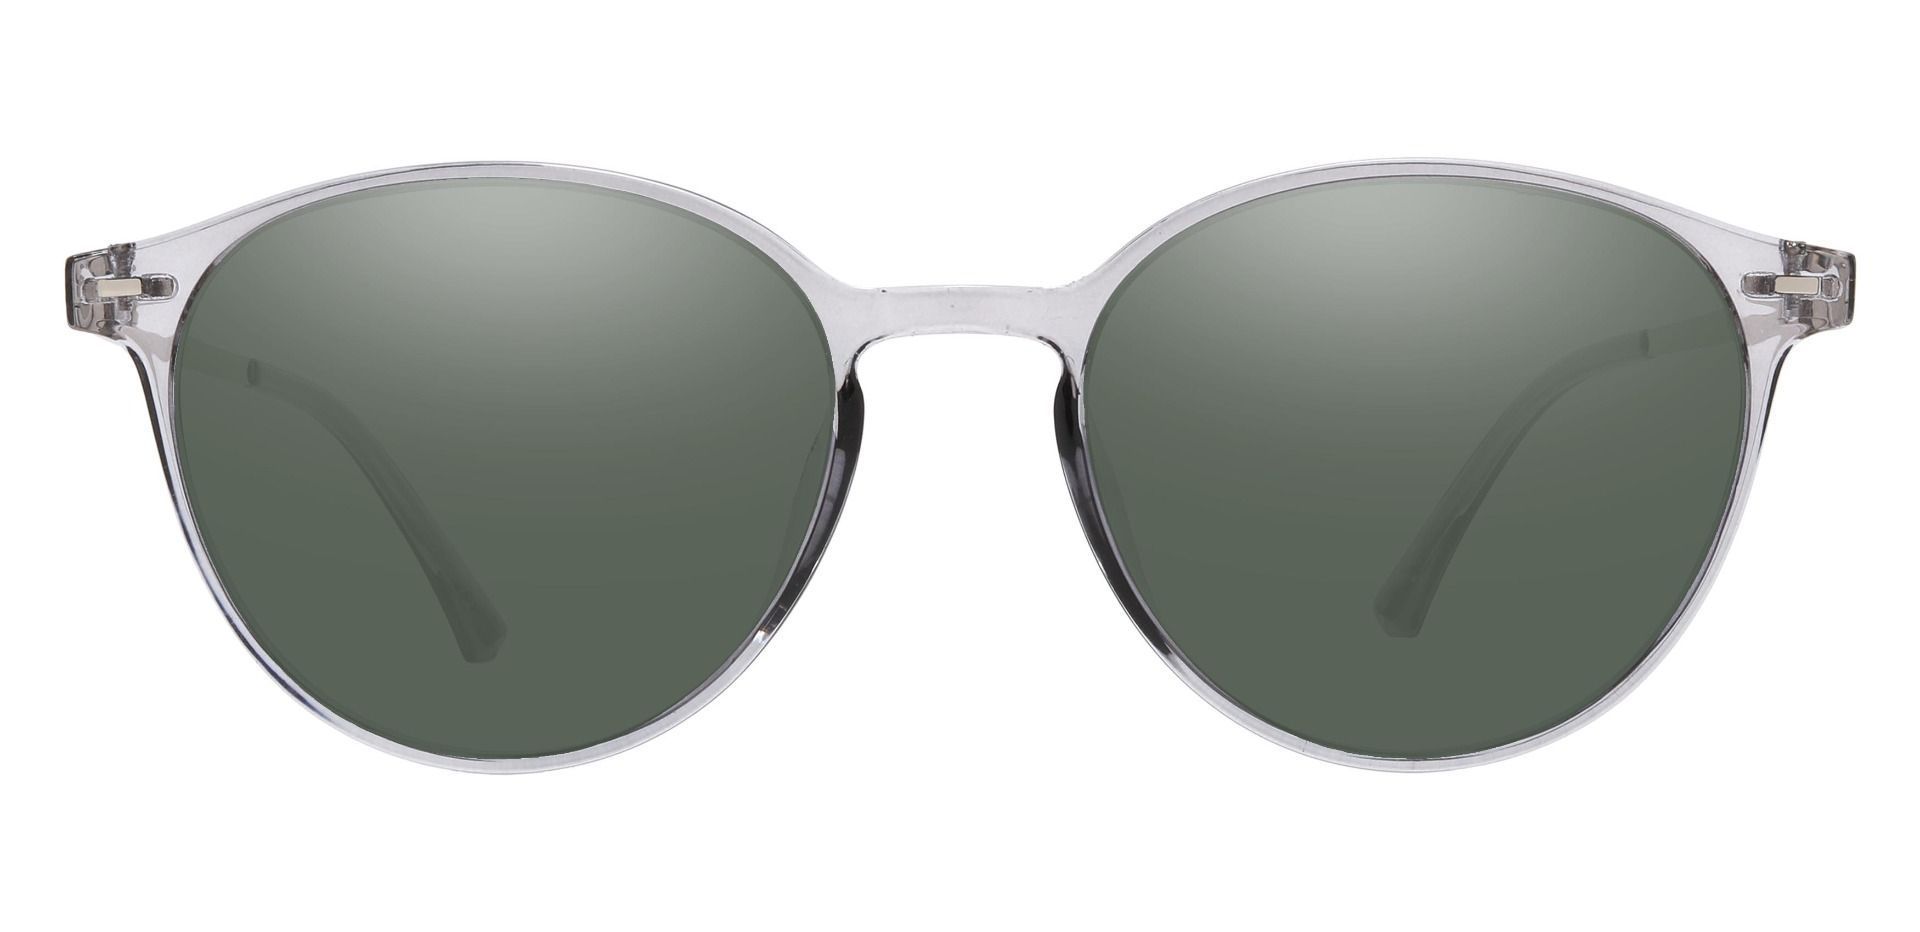 Springer Round Prescription Sunglasses - Gray Frame With Green Lenses